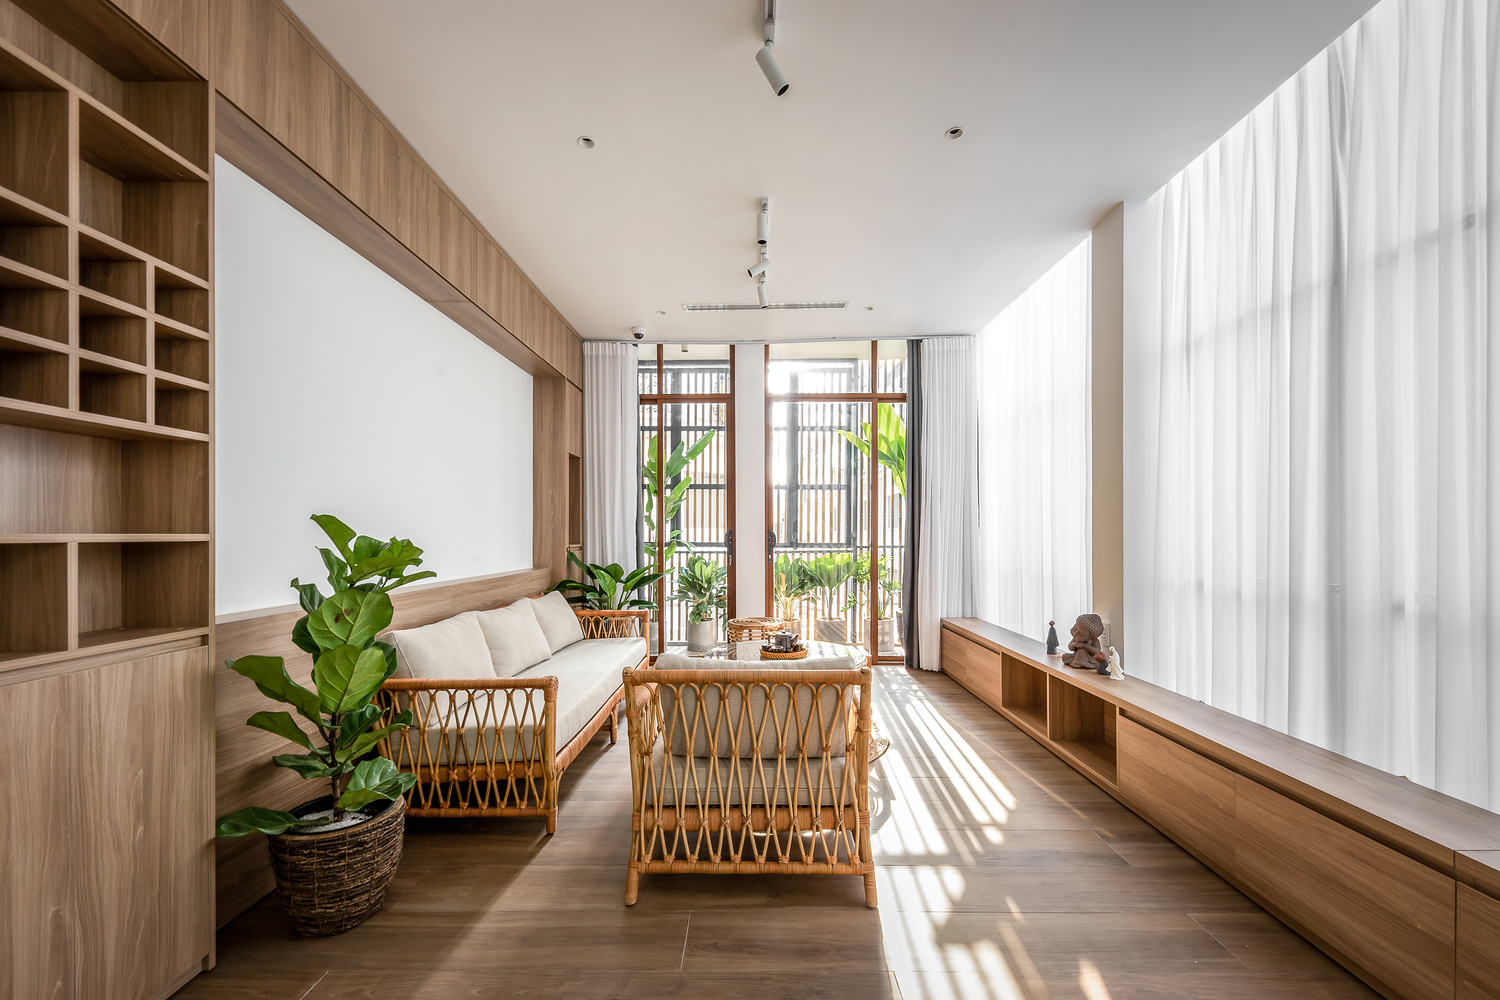 Phòng khách với hệ cửa kính lớn và cây xanh xung quanh, giúp giải phóng tầm nhìn, tạo sự thoải mái khi sống trong không gian nhỏ.